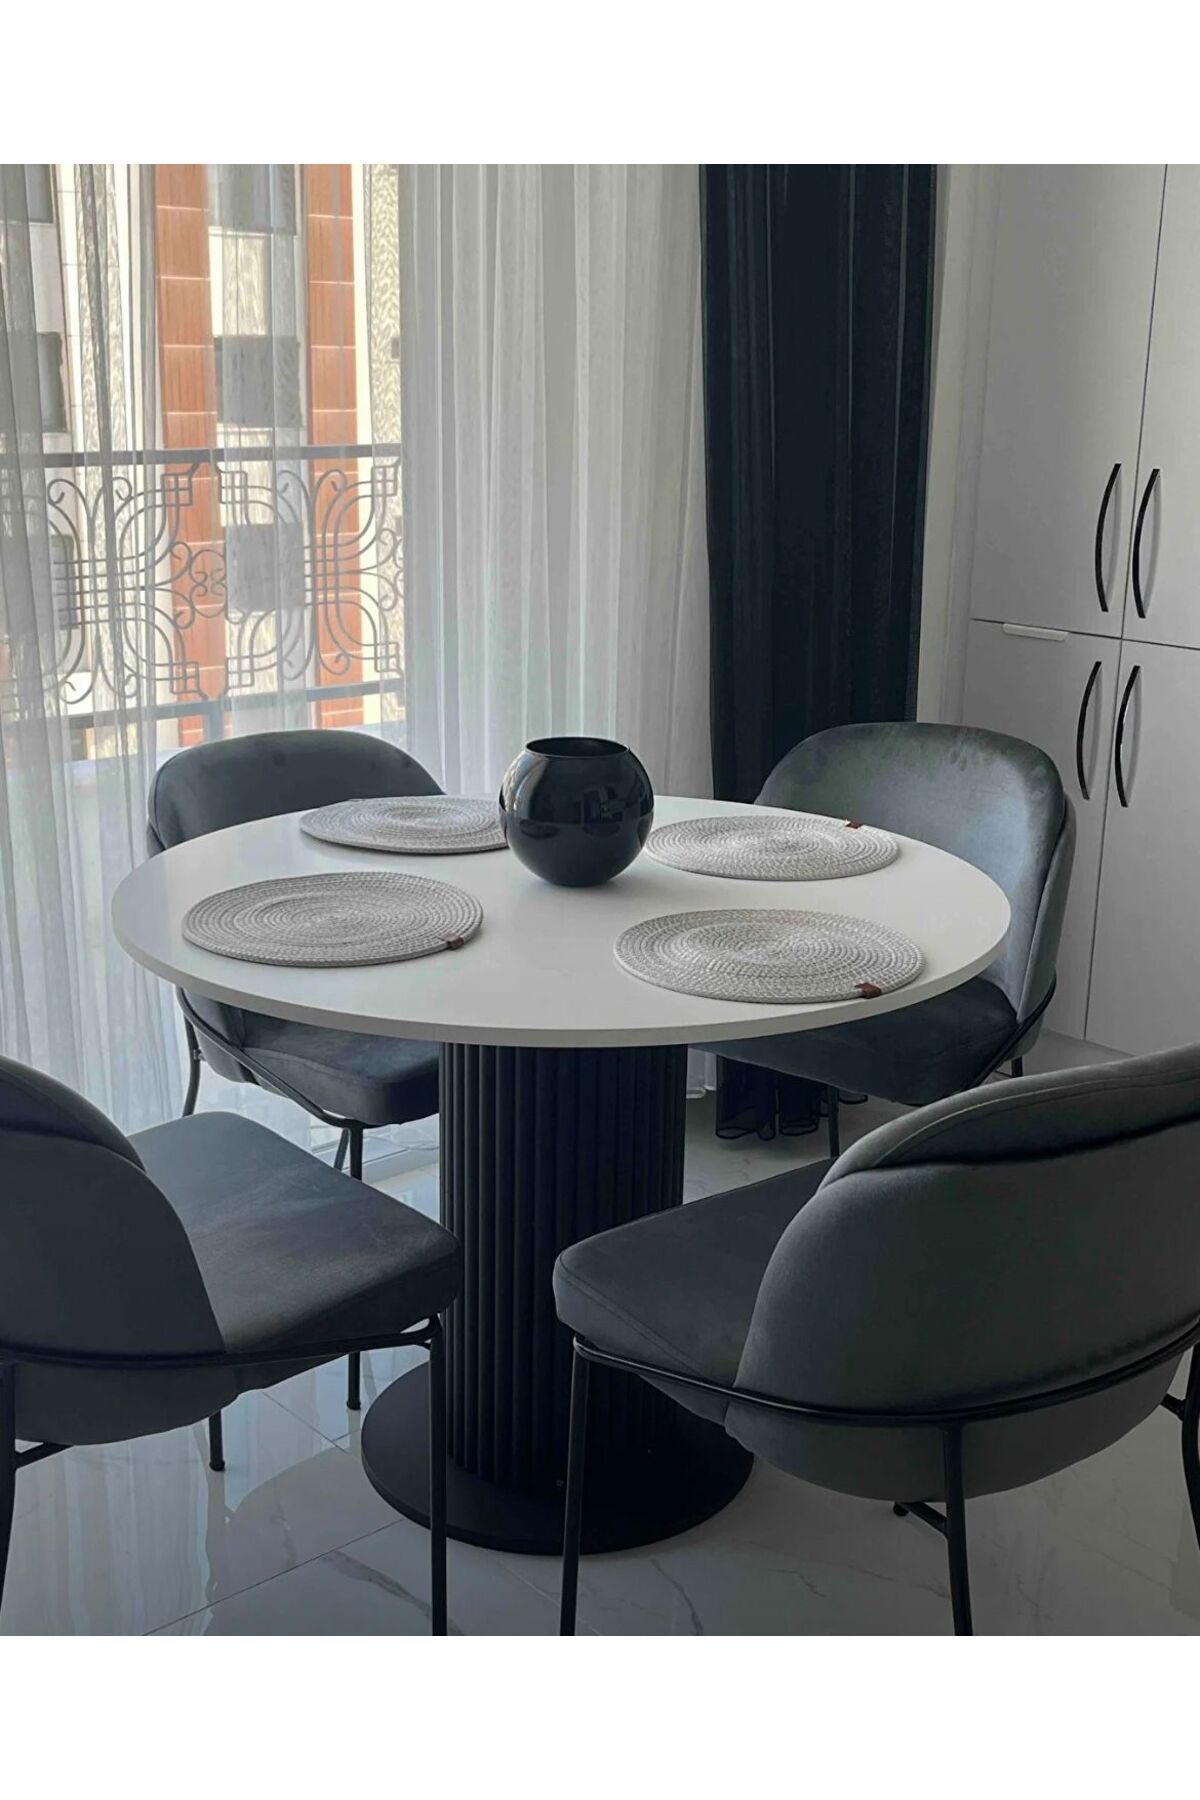 Seyvey Dizayn Özel Tasarım Yuvarlak Siyah Yemek Masası Balkon Mutfak Masası Çalışma Ofis Masası 103 Cm